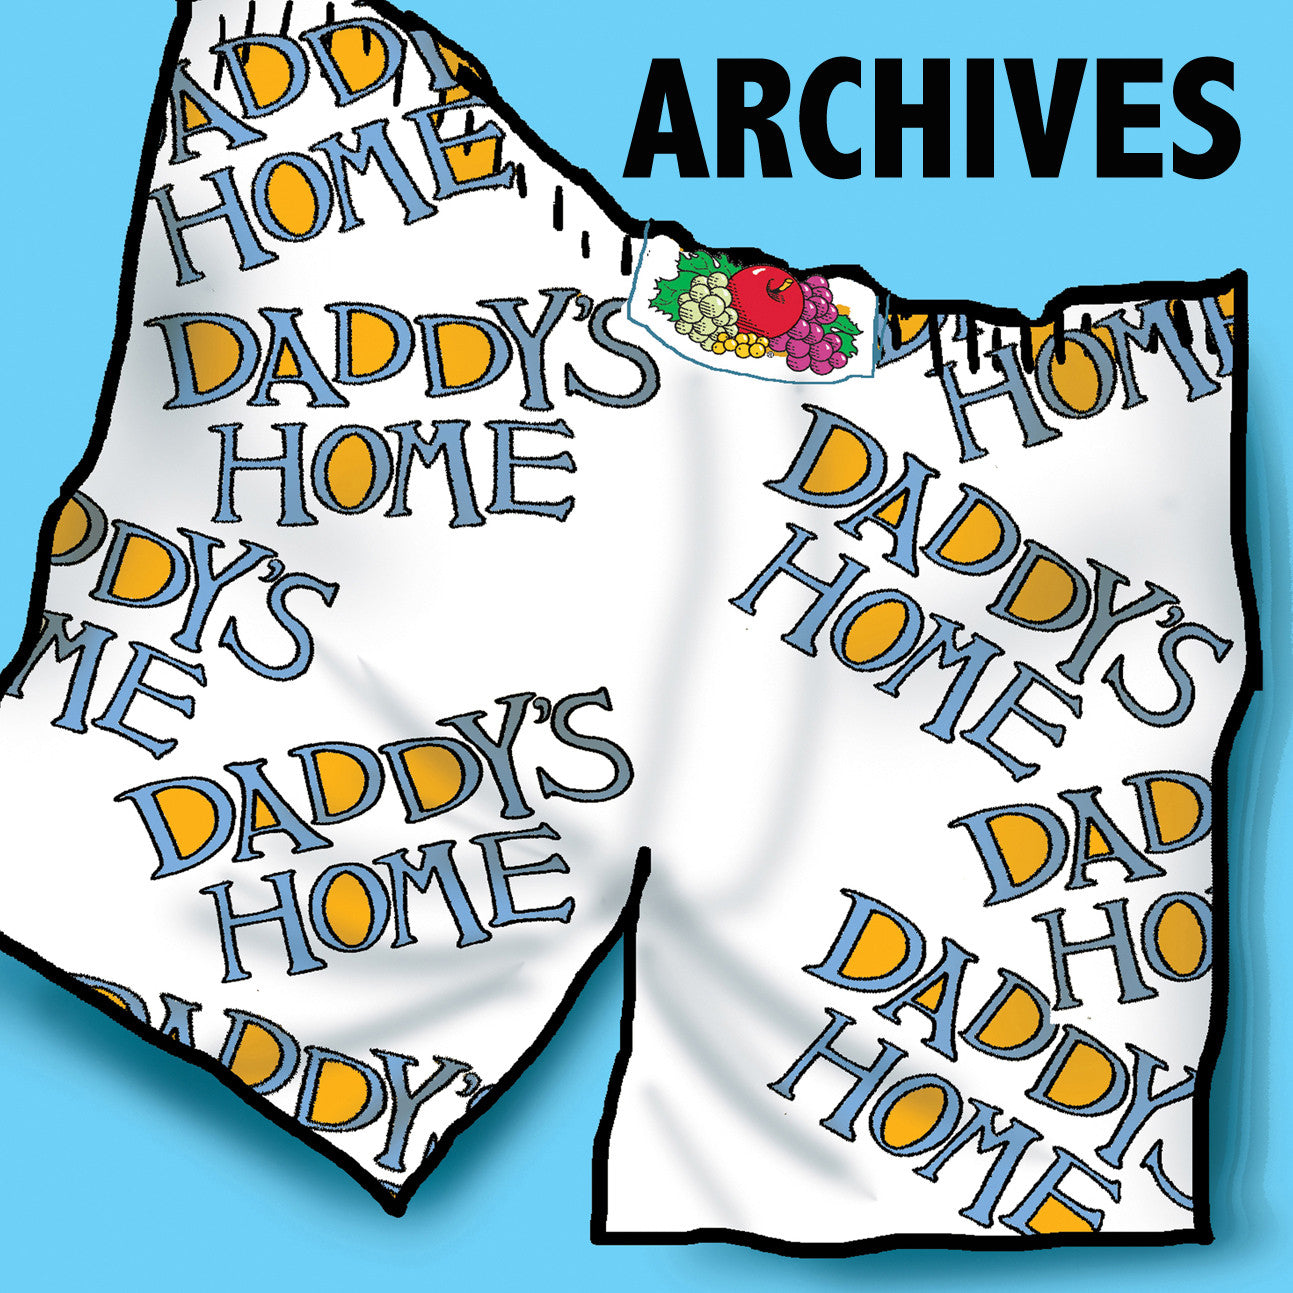 Daddy's Home Archives BOOK & COMICS Rubino Creative Fine Art   